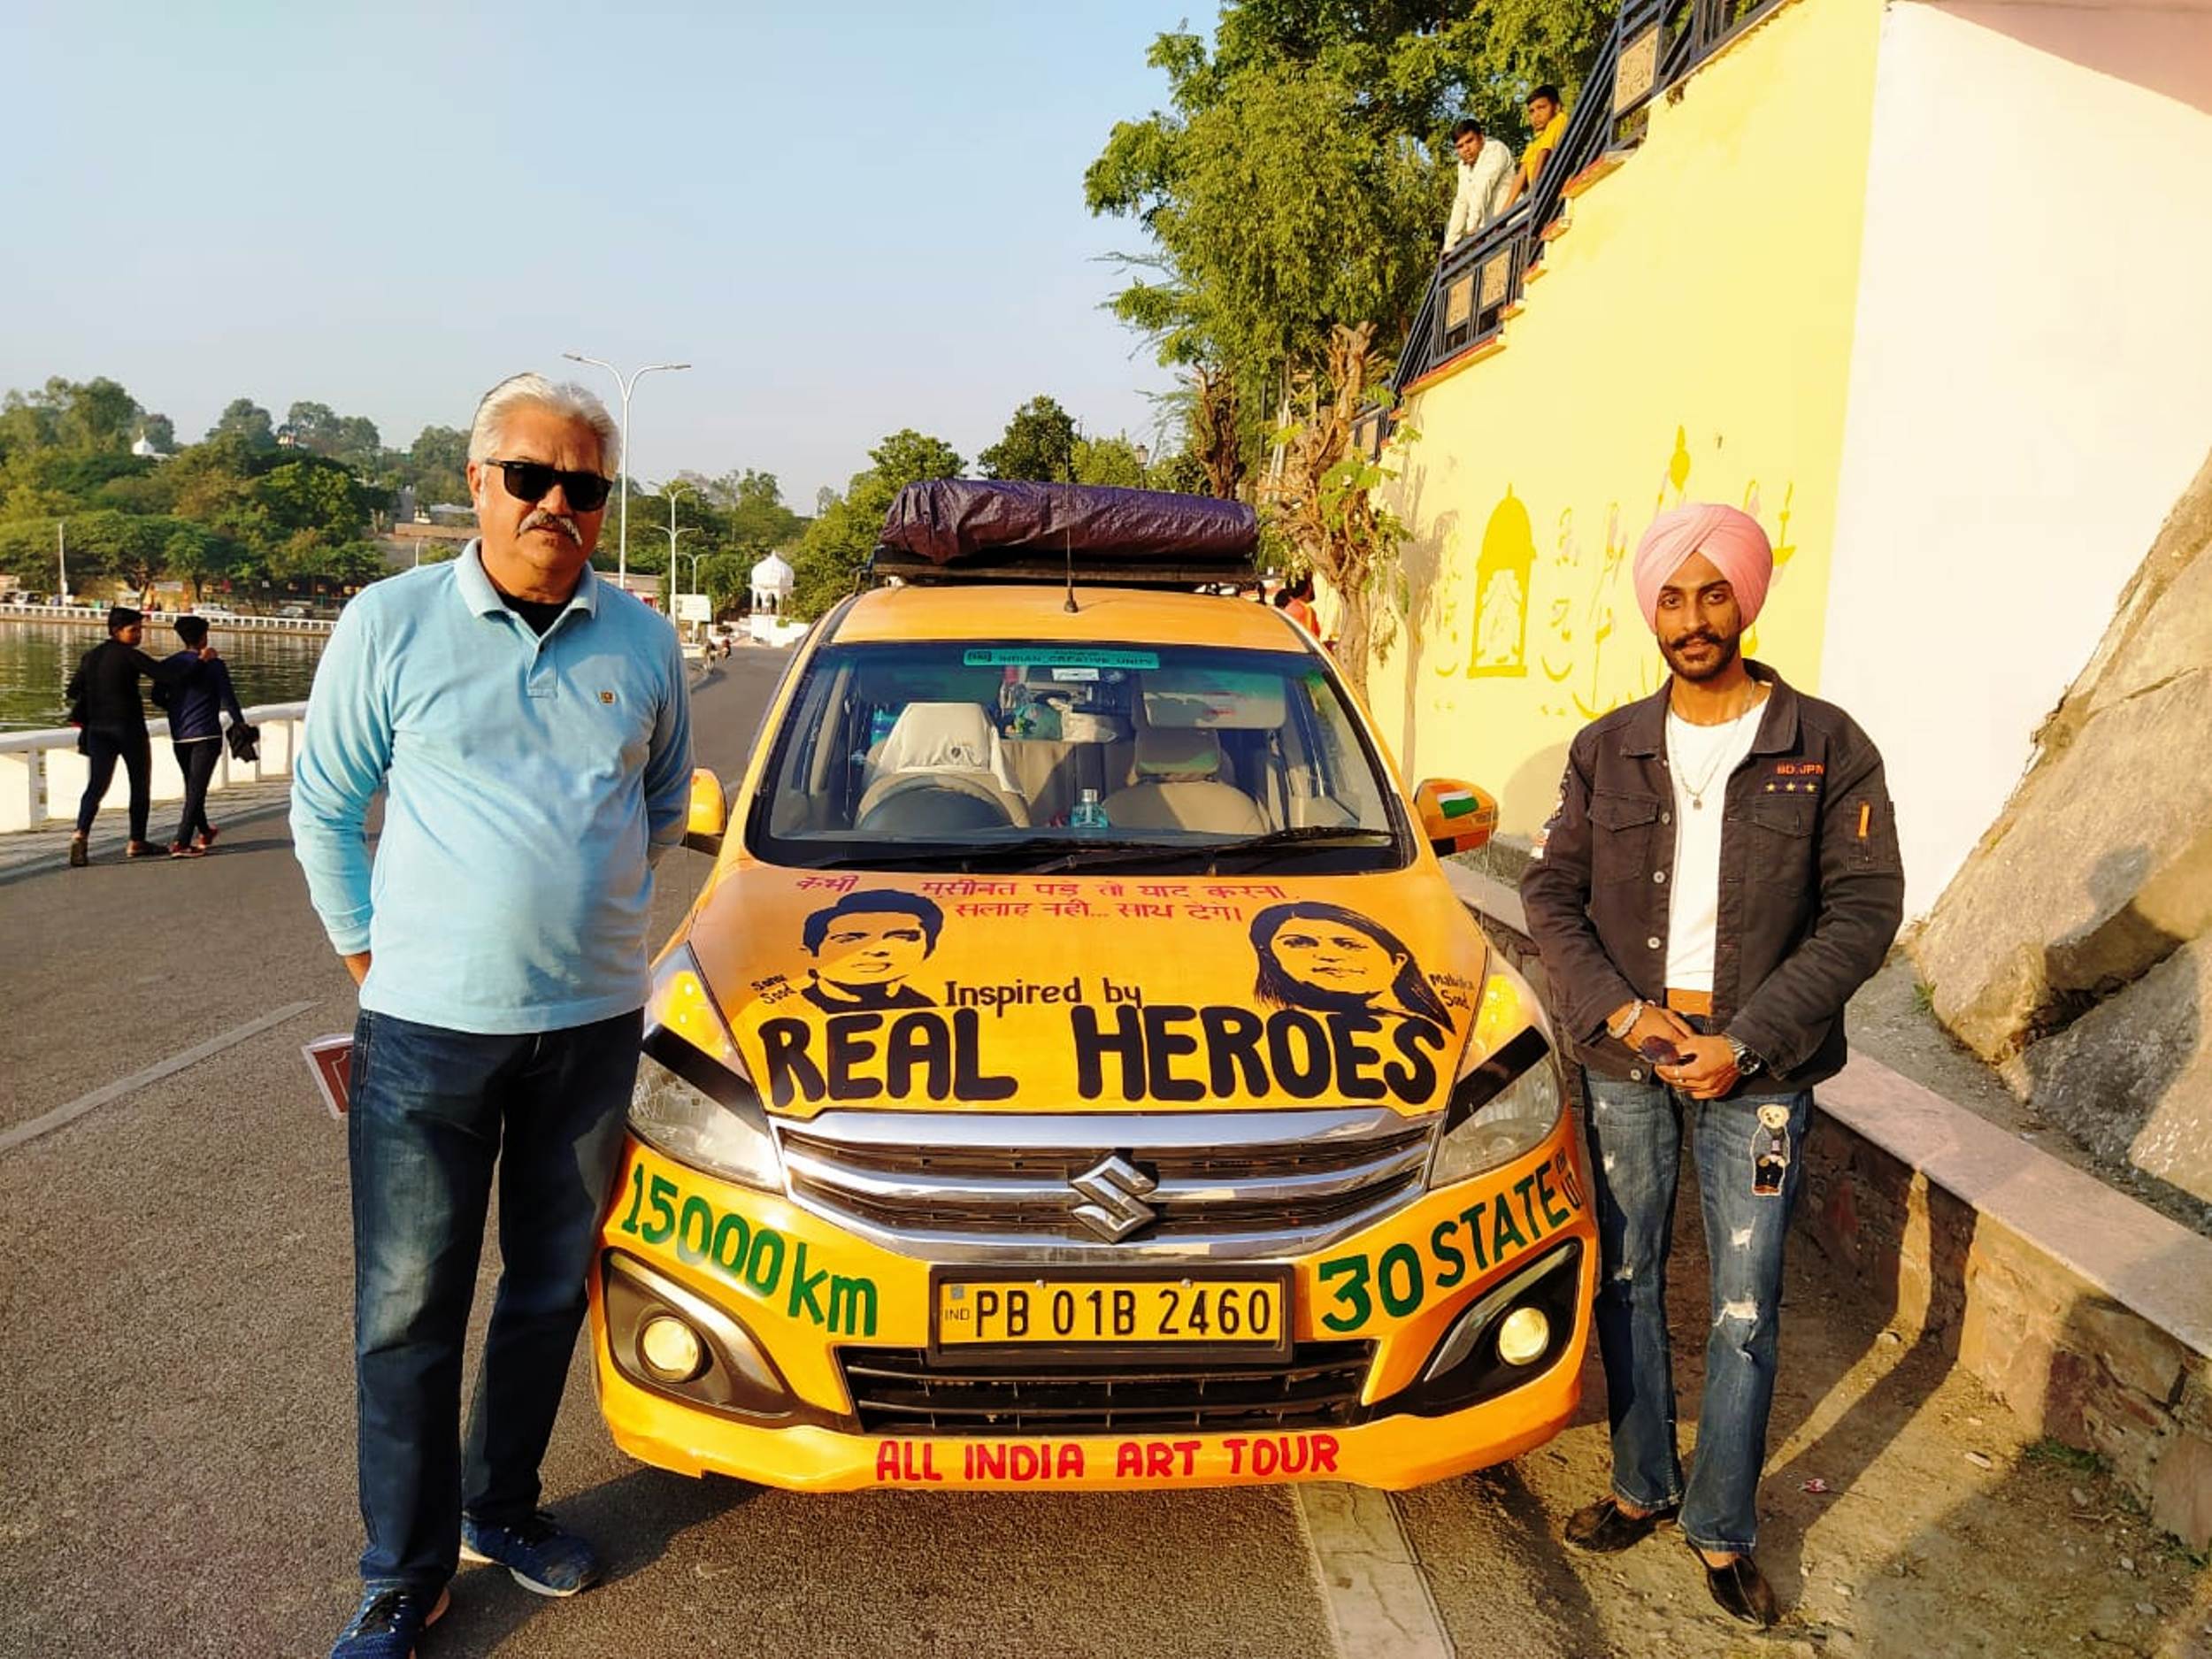 Dr. Baljinder reached Udaipur to deliver the message of art conservation